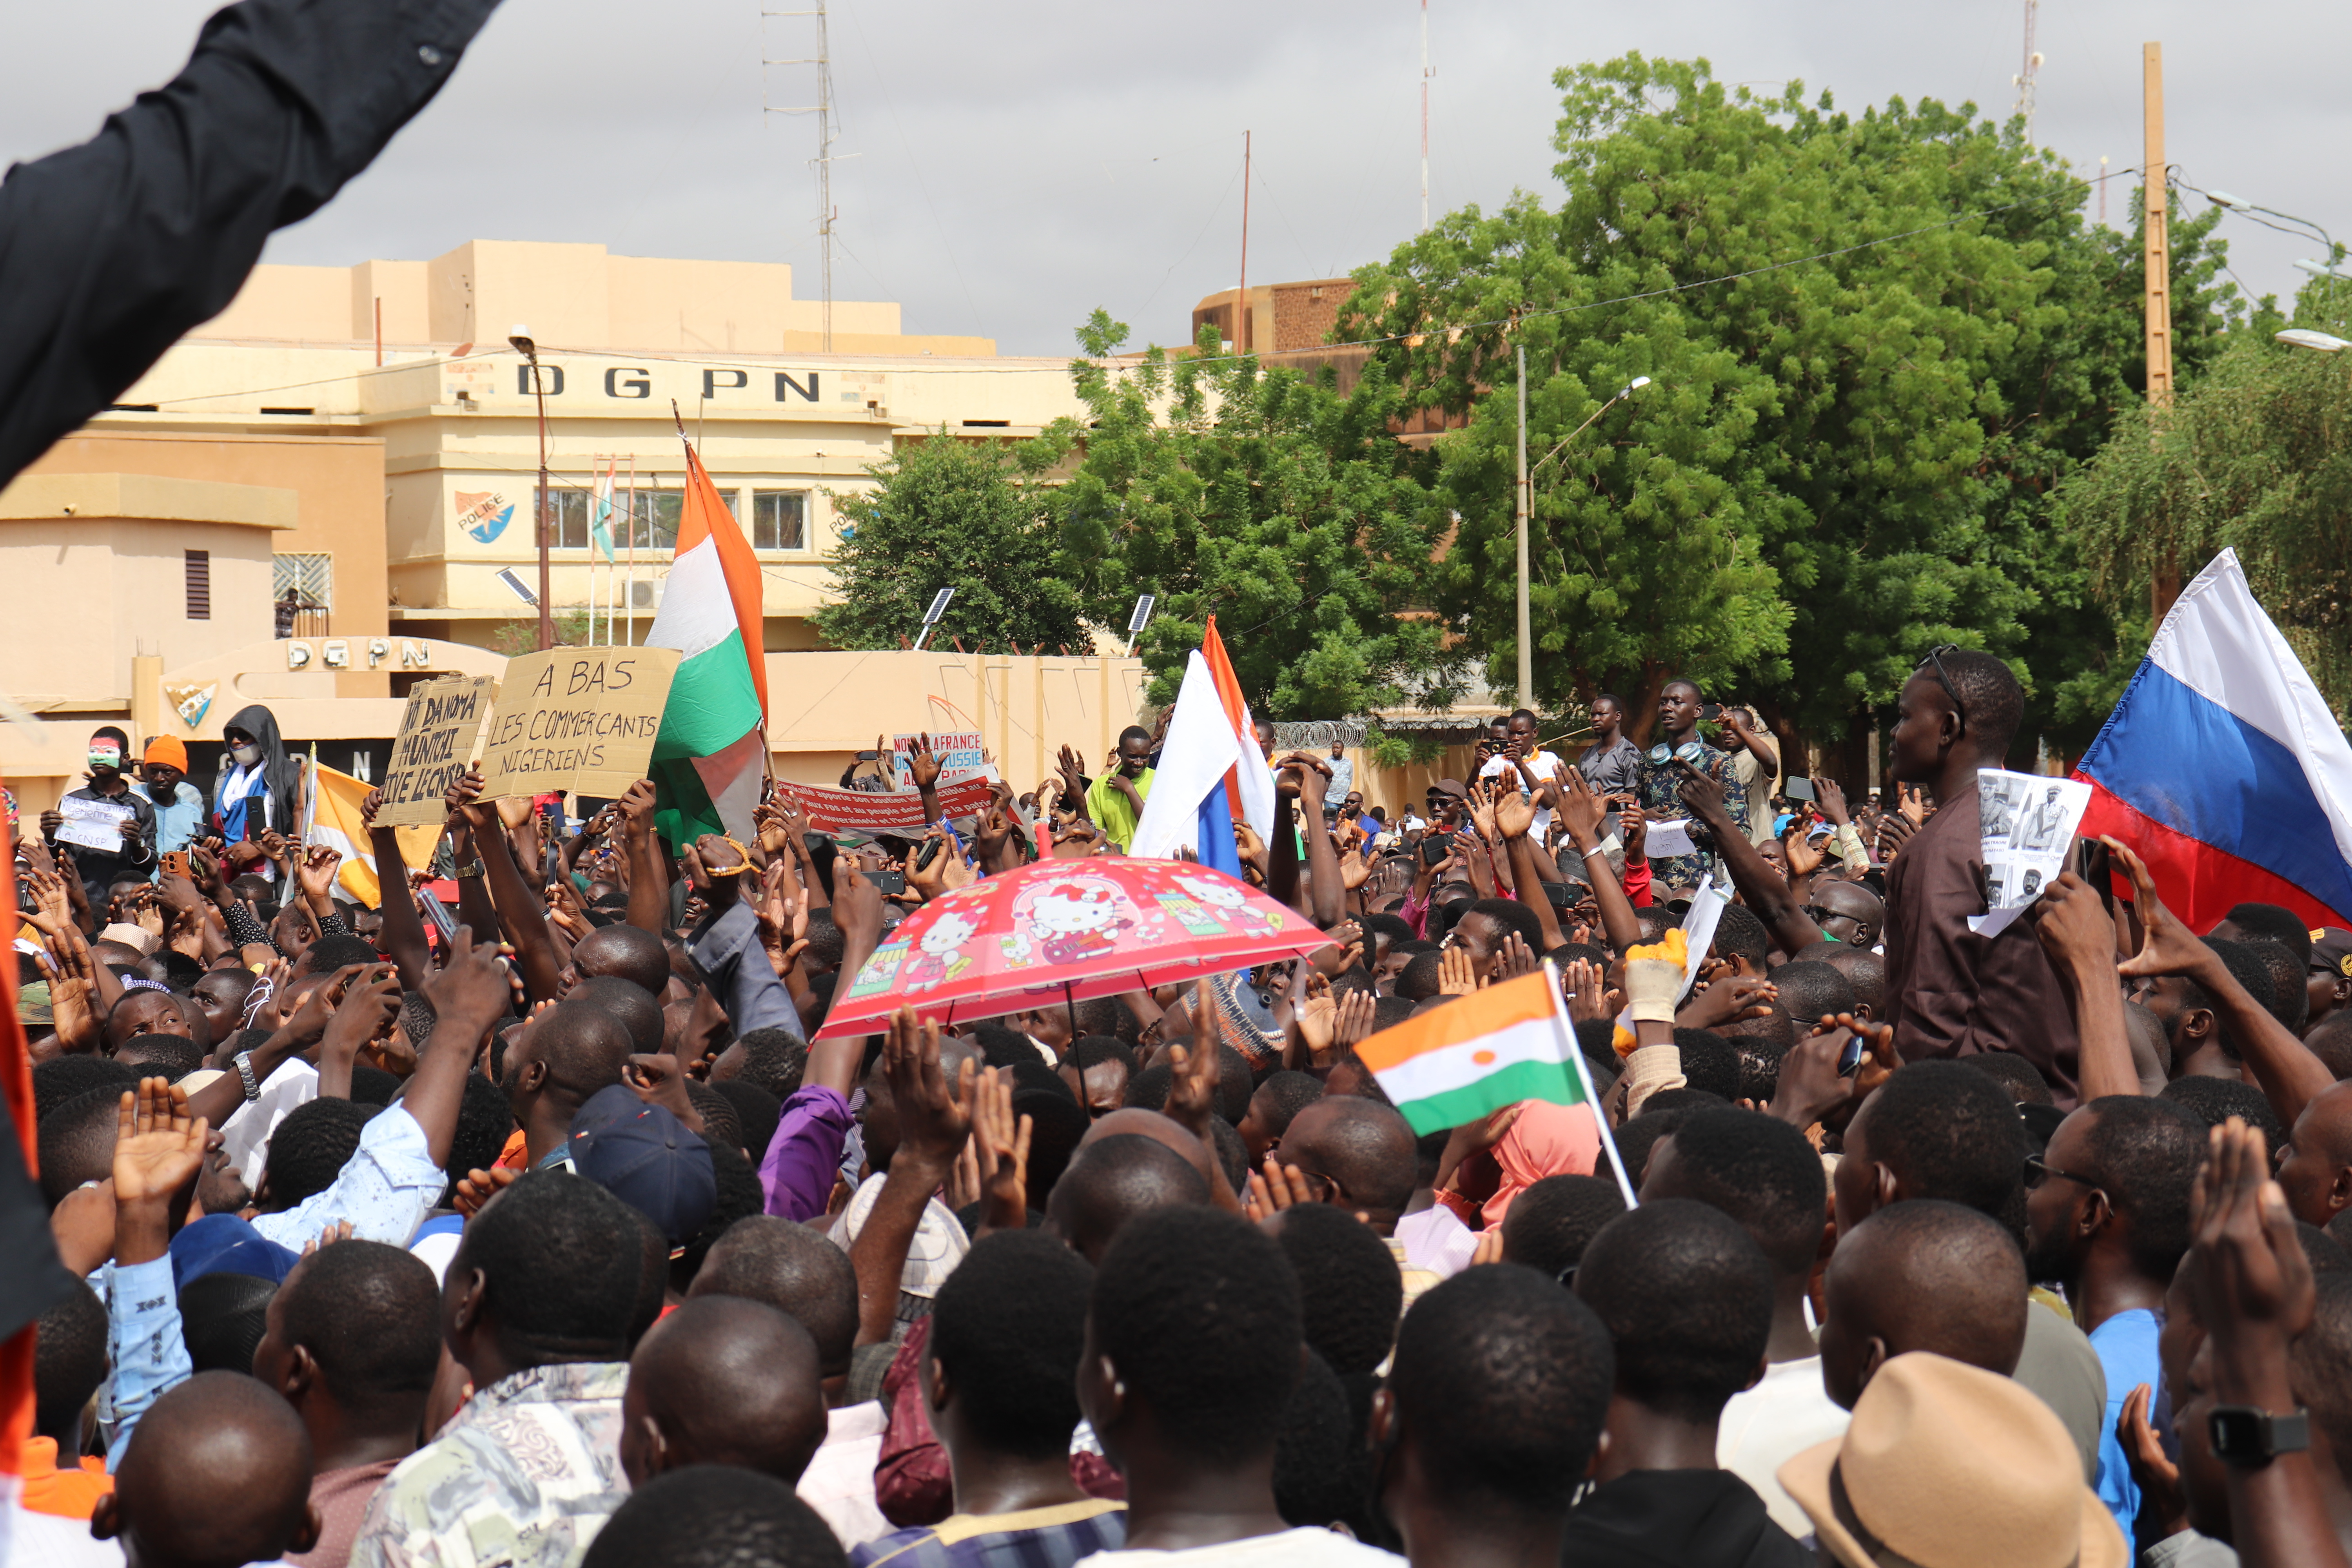 Menschen demonstrieren in Nigers Hauptstadt Niamey, um damit ihre Unterstützung für die Putschisten zu zeigen. Bei der Demonstration wurden Parolen gegen Frankreich gerufen und russische Fahnen getragen. 